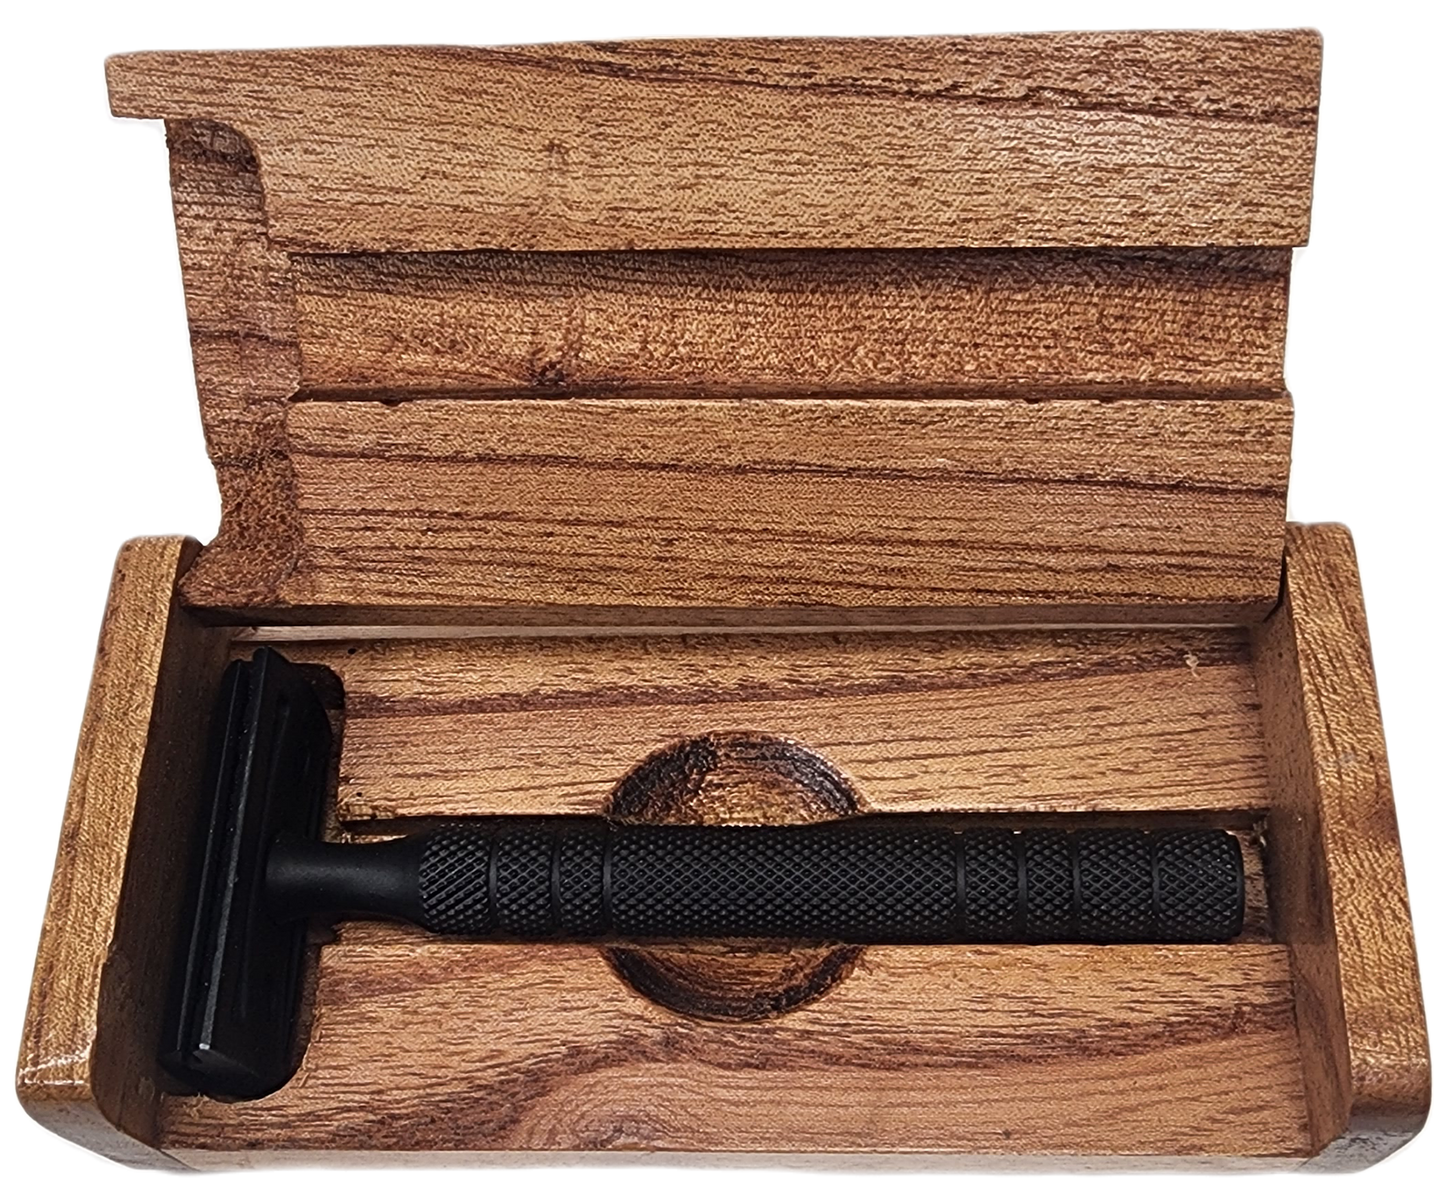 Safety Razor Wood Engraved Box Set